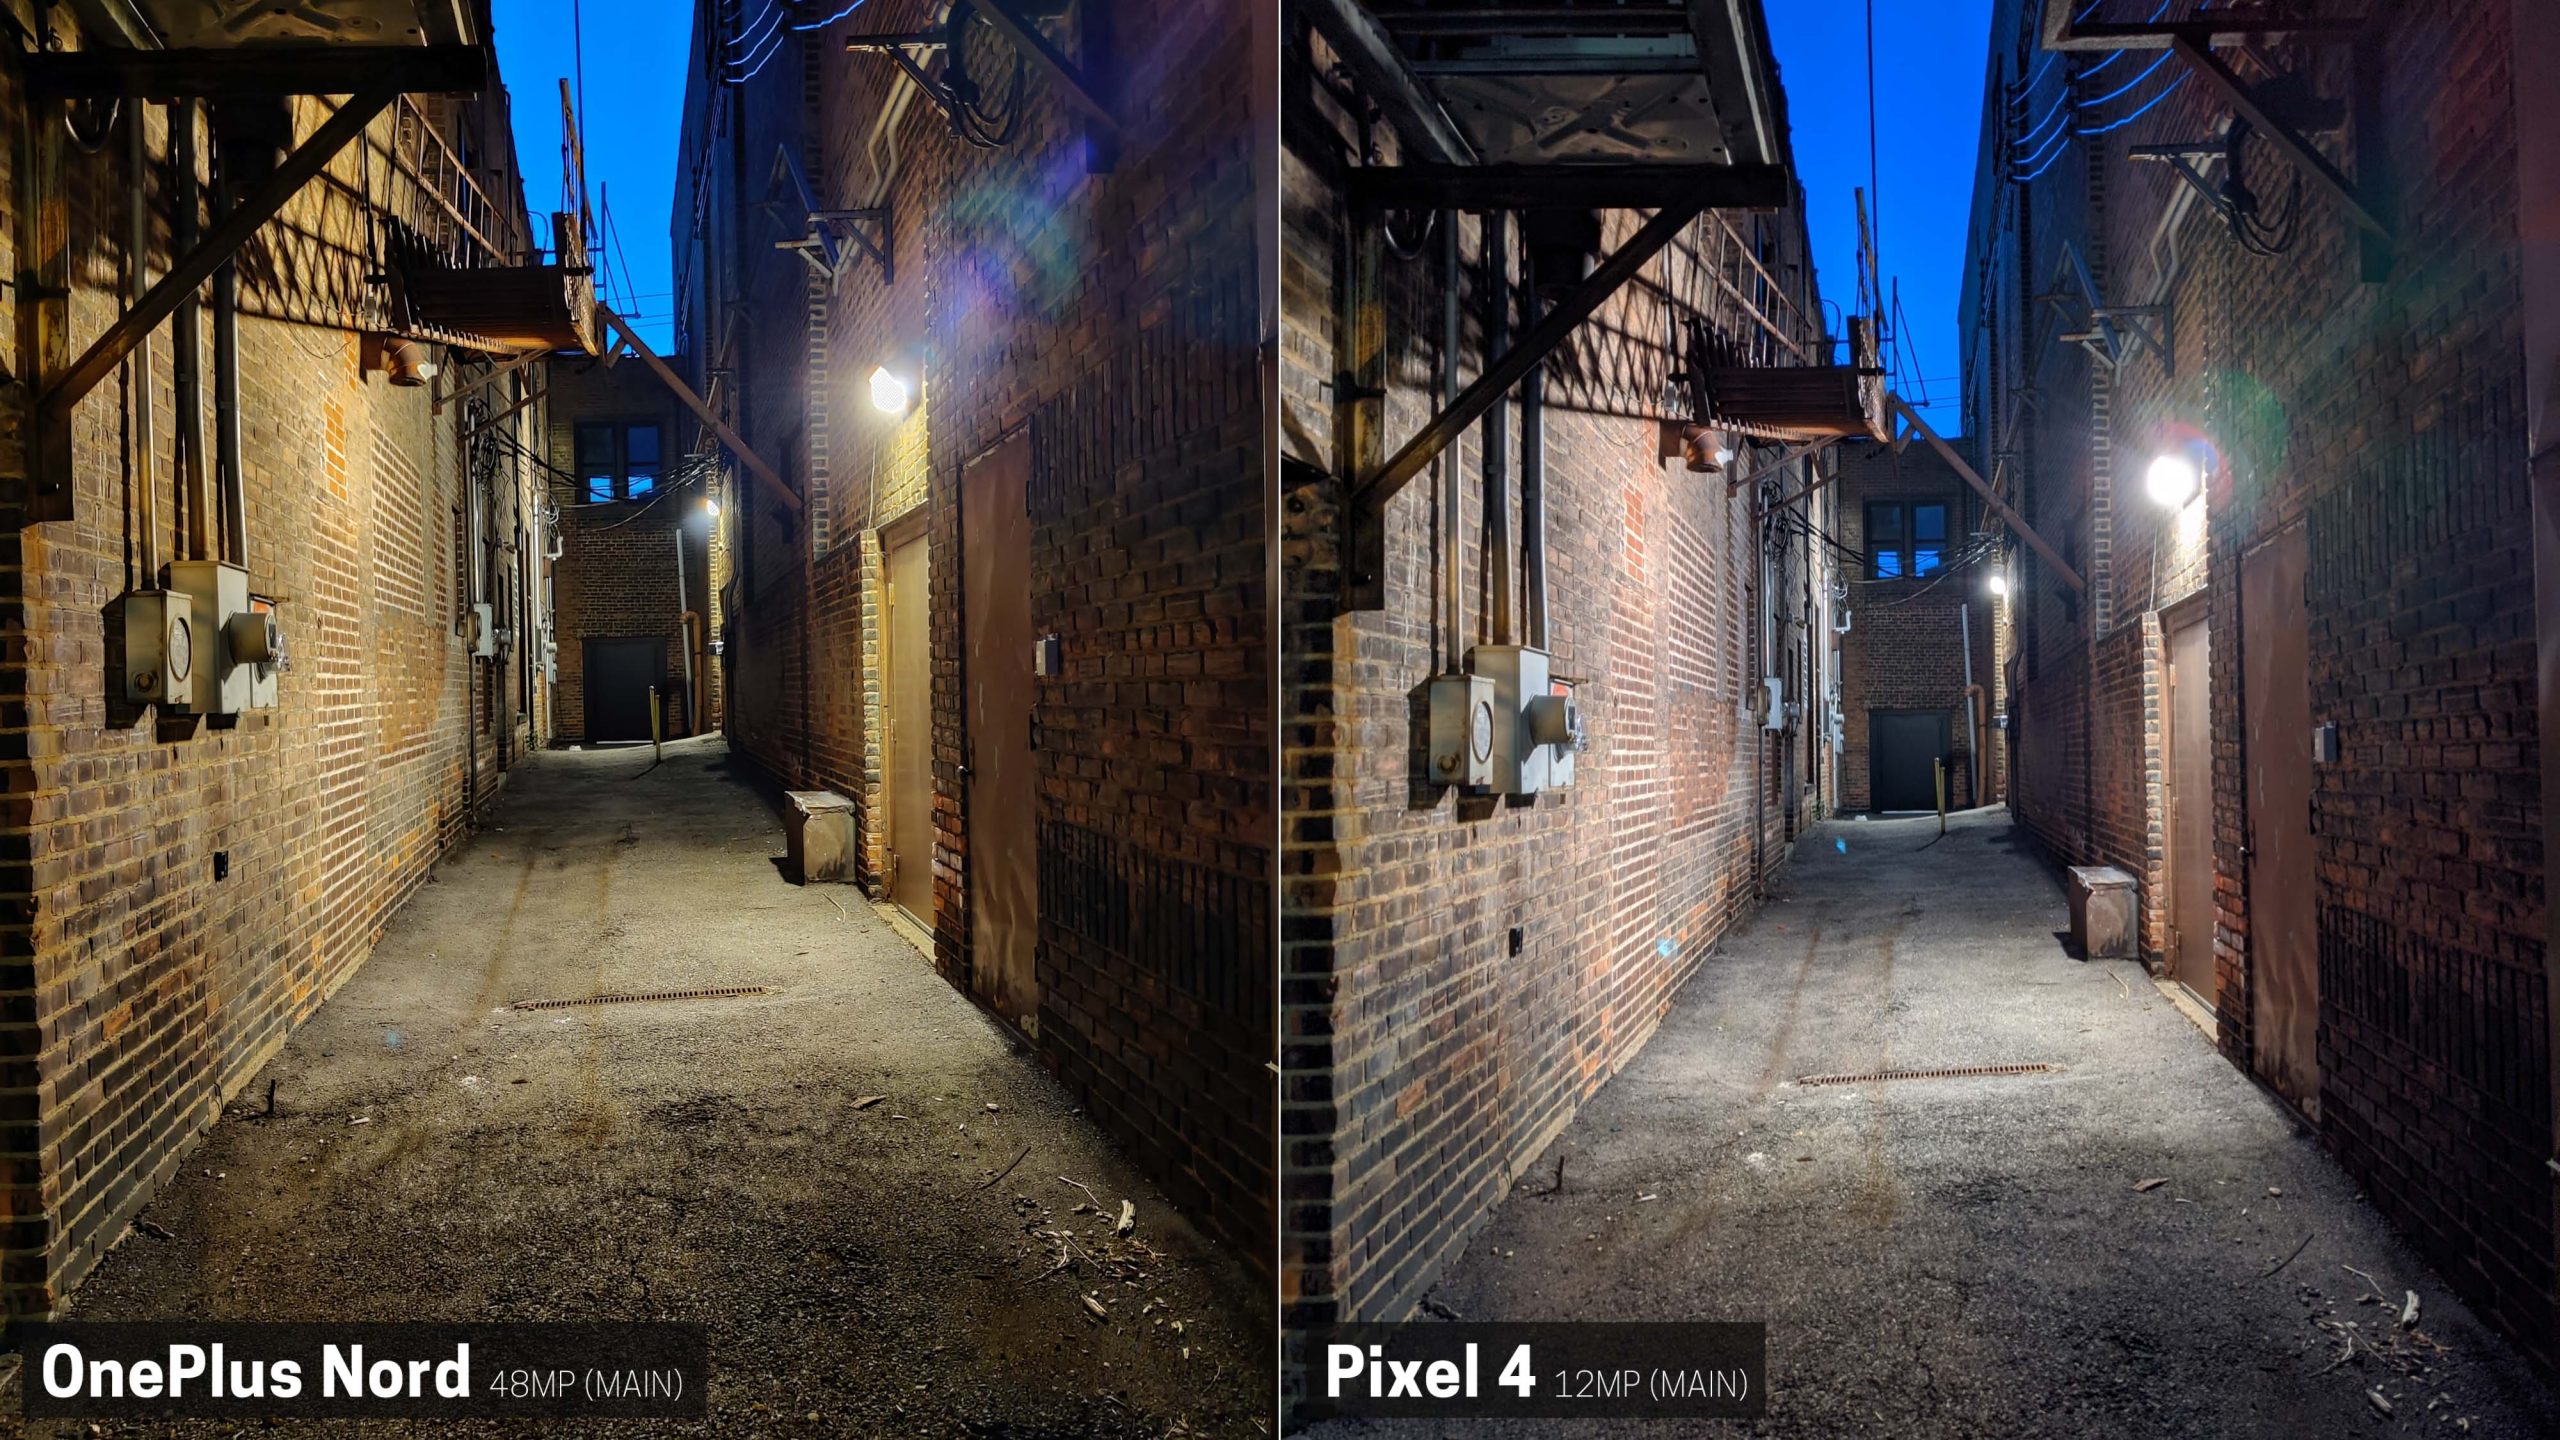 Pixel 4 melenyapkan OnePlus Nord dalam perbandingan kamera 31